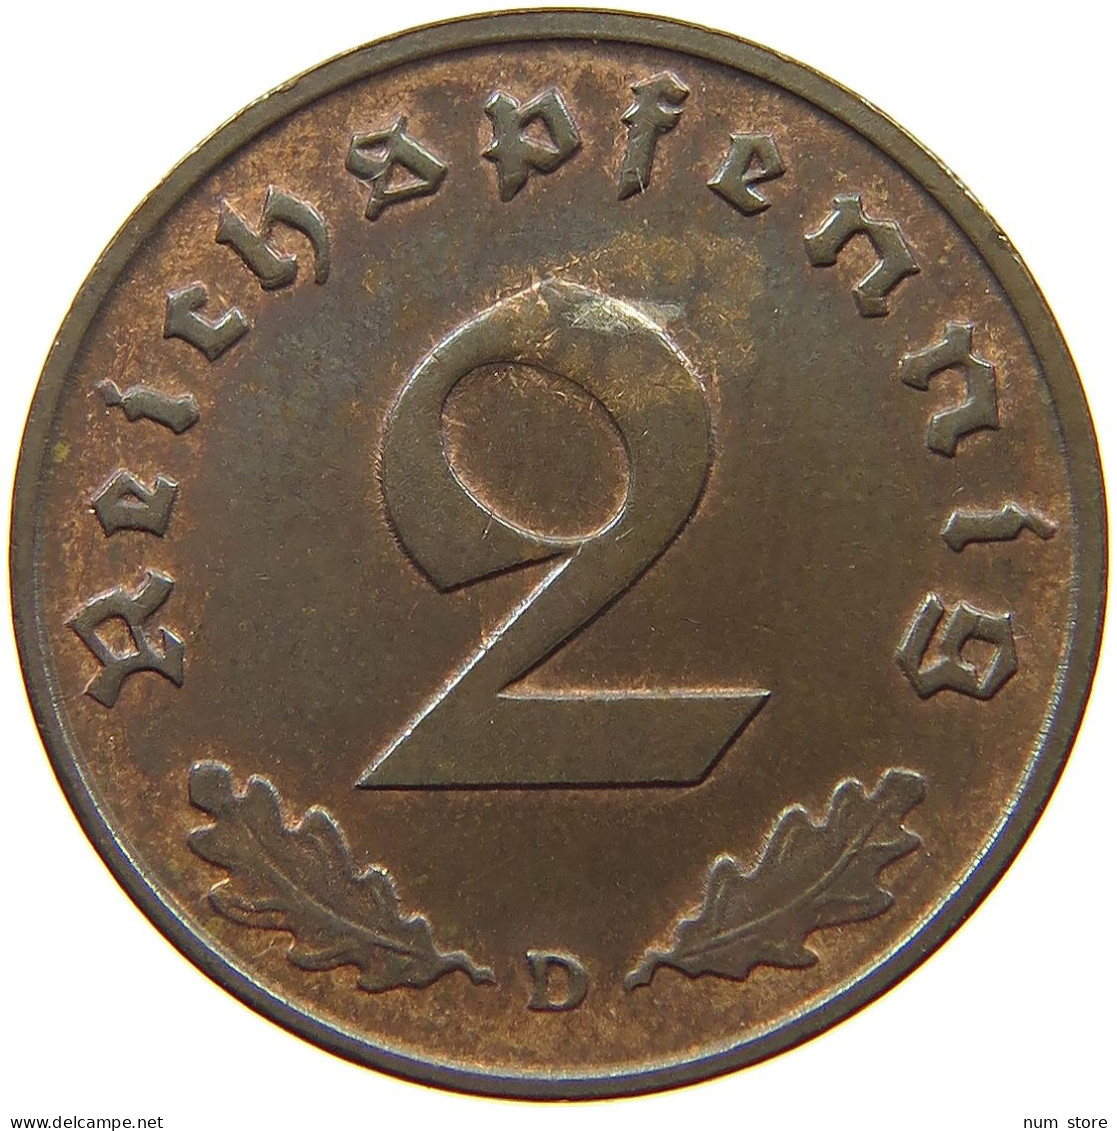 GERMANY 2 PFENNIG 1939 D #a043 0679 - 2 Reichspfennig